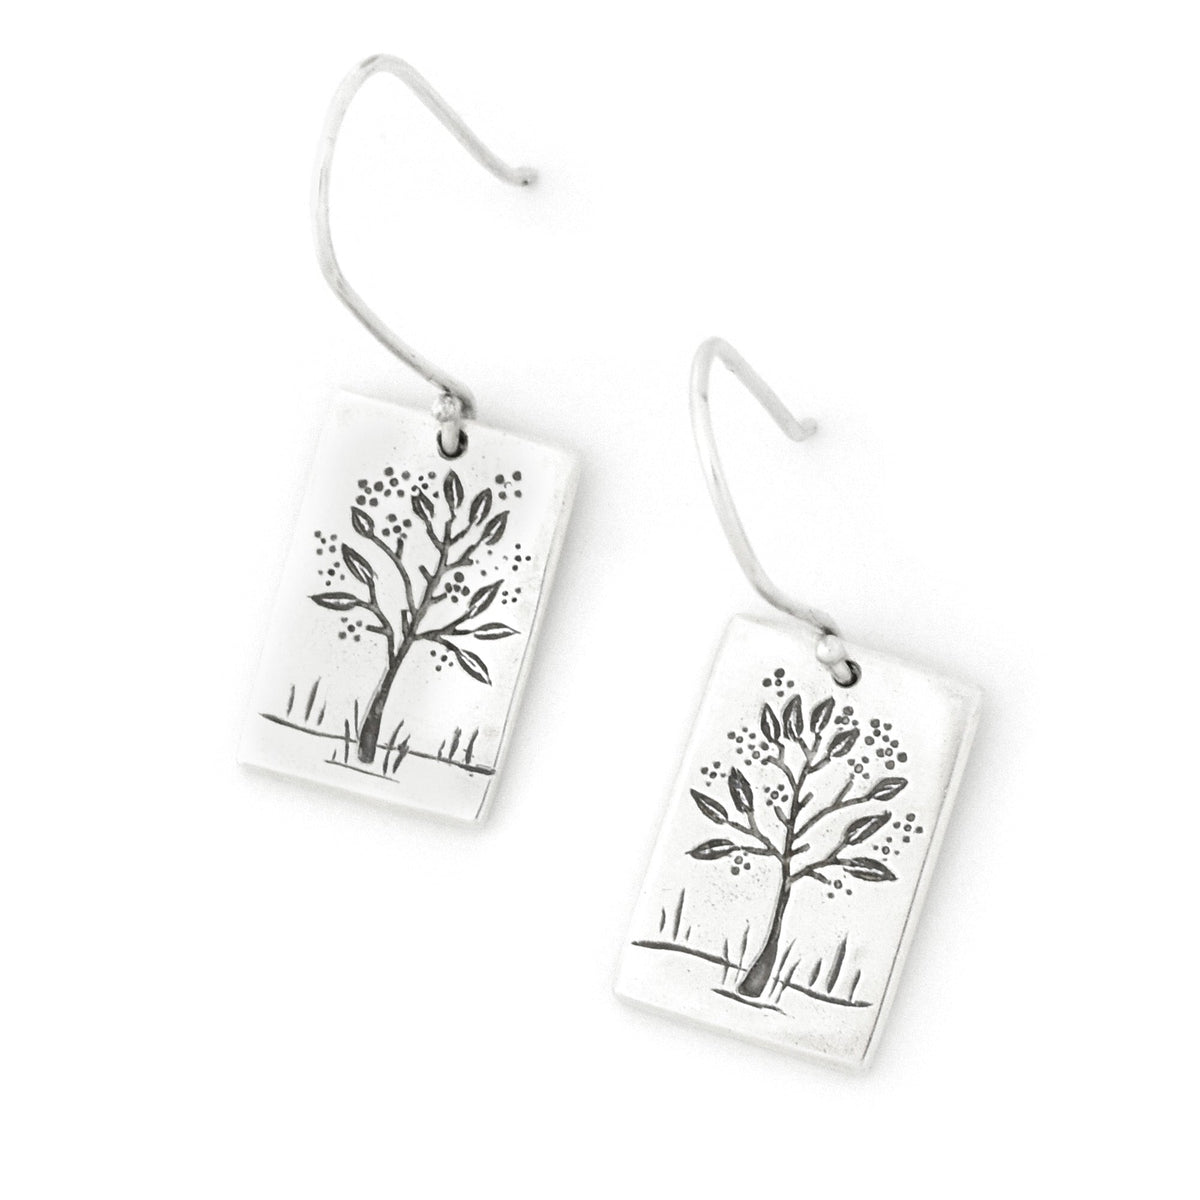 Reversible Equinox Tree Earrings - Silver Earrings   7101 - handmade by Beth Millner Jewelry